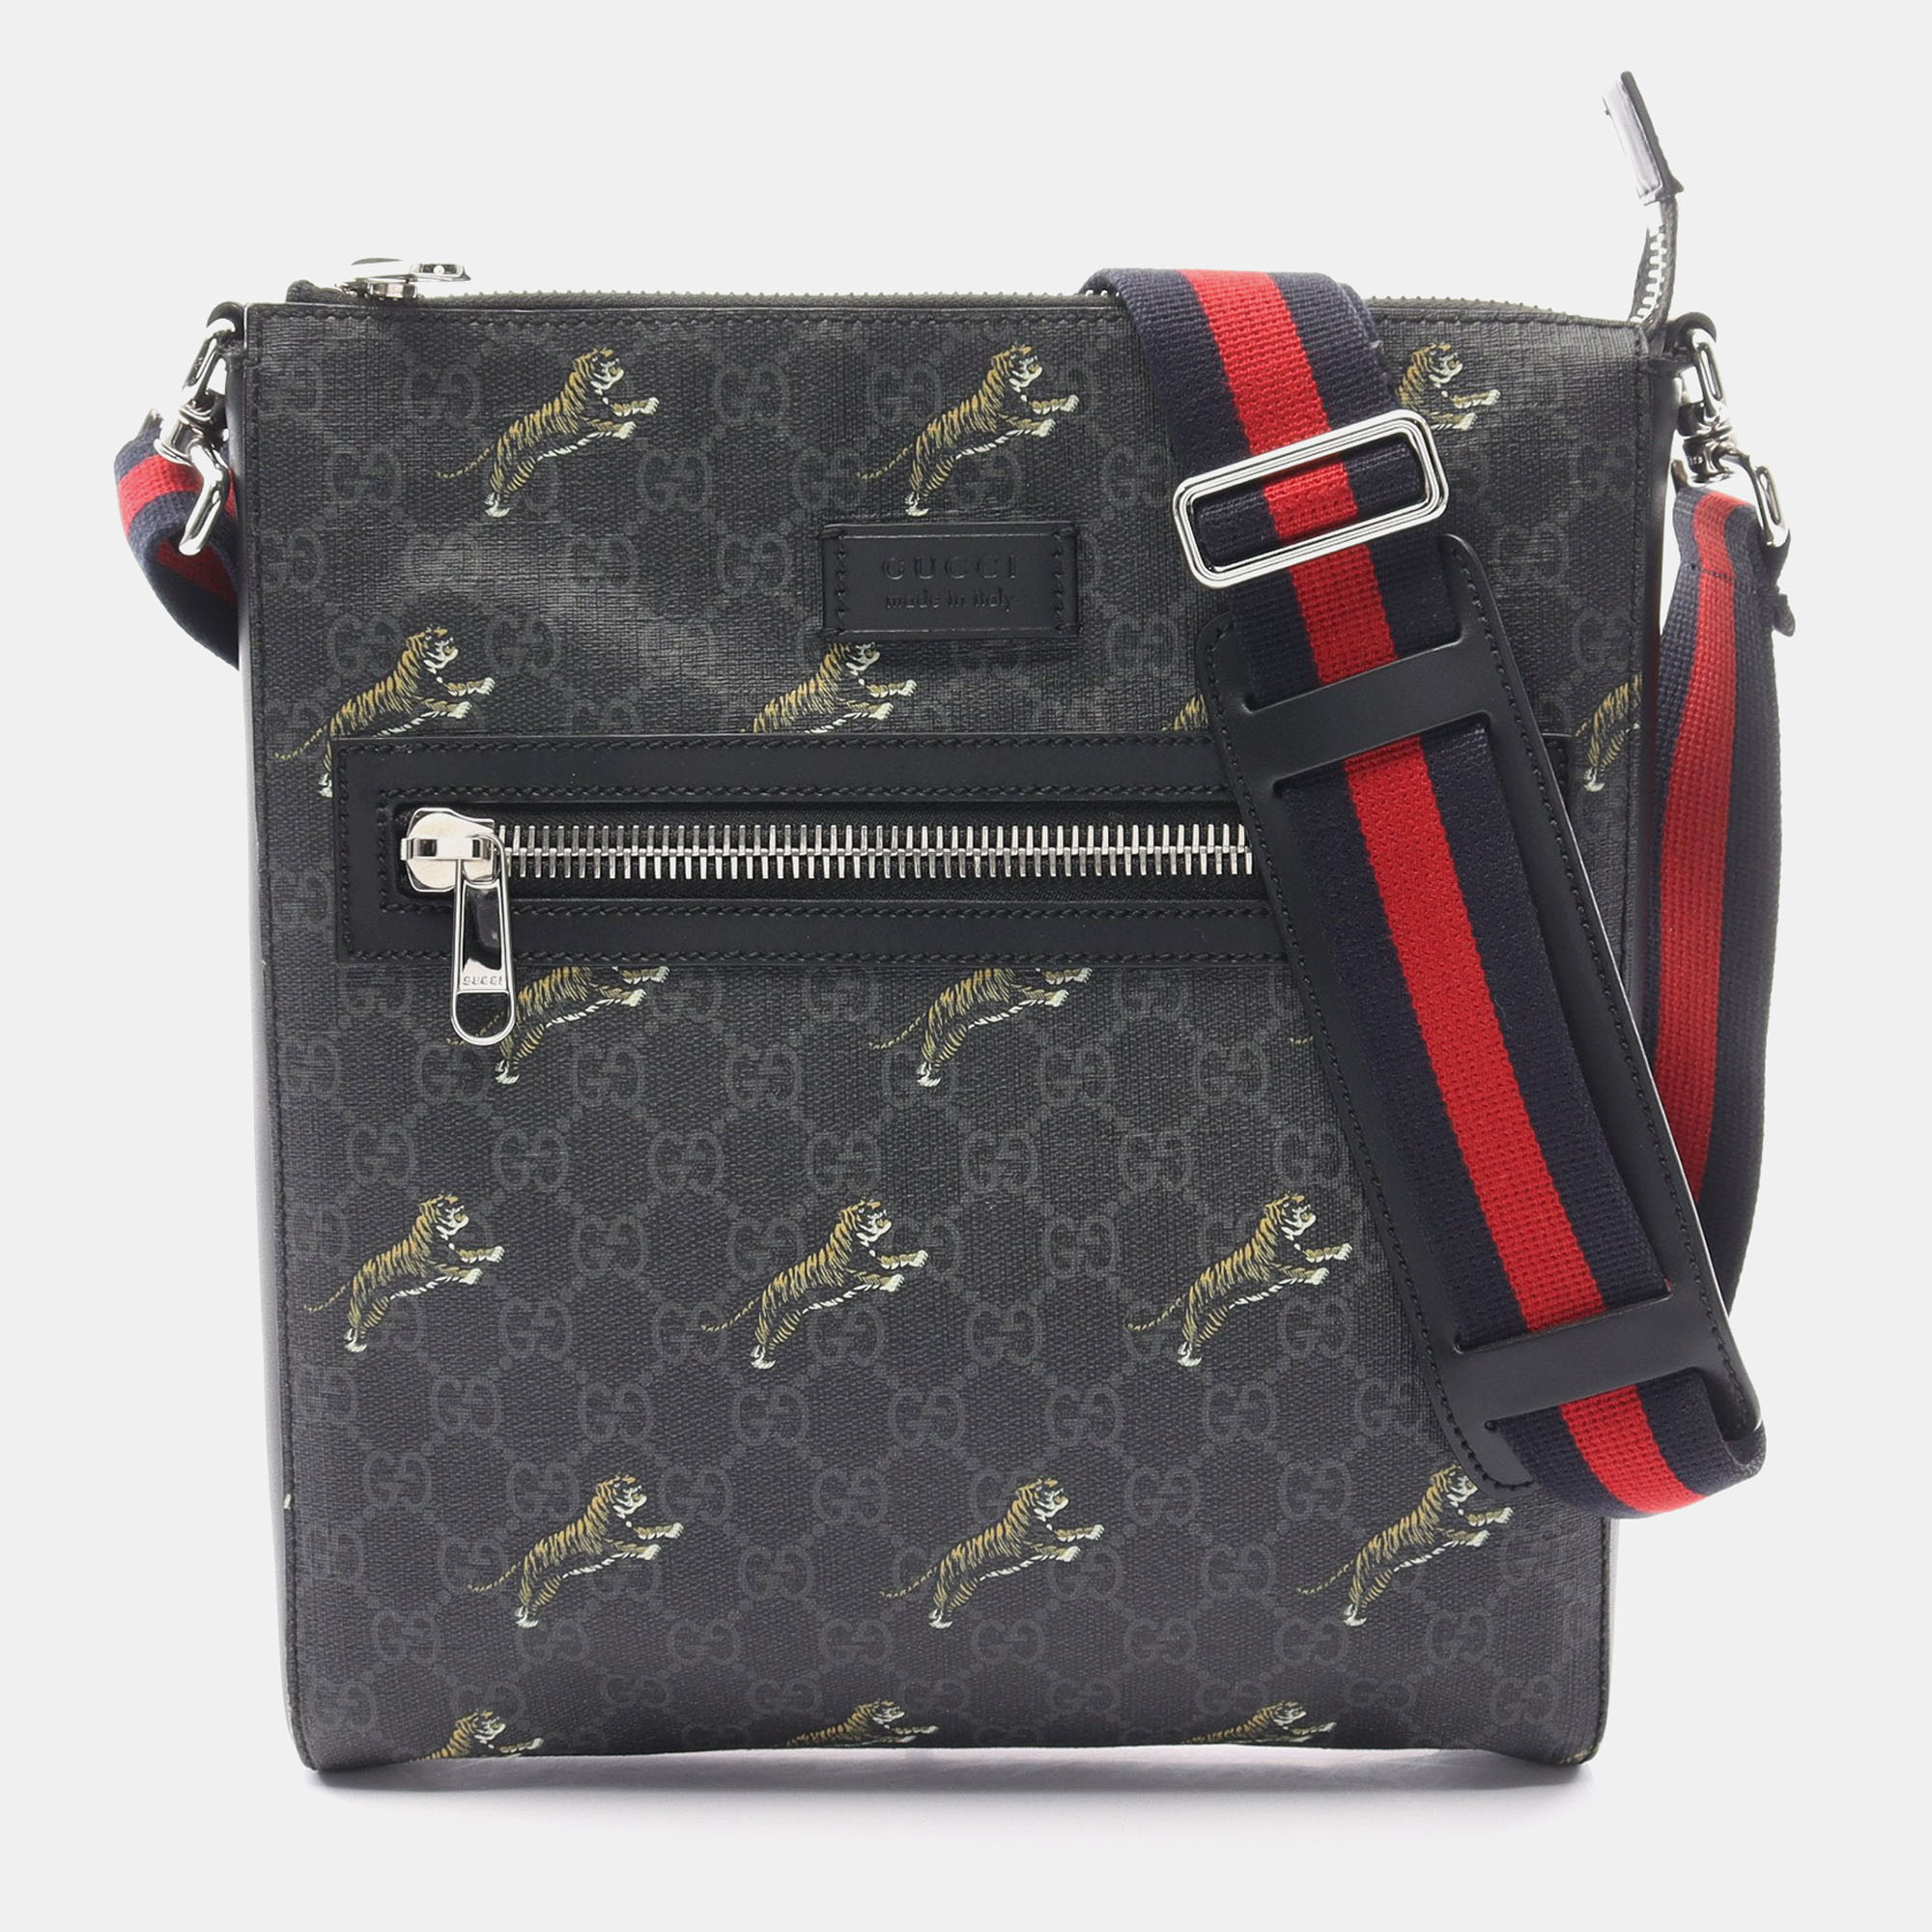 

Gucci GG Supreme Tiger Messenger bag Sherry line Shoulder bag PVC Leather Black Multicolor